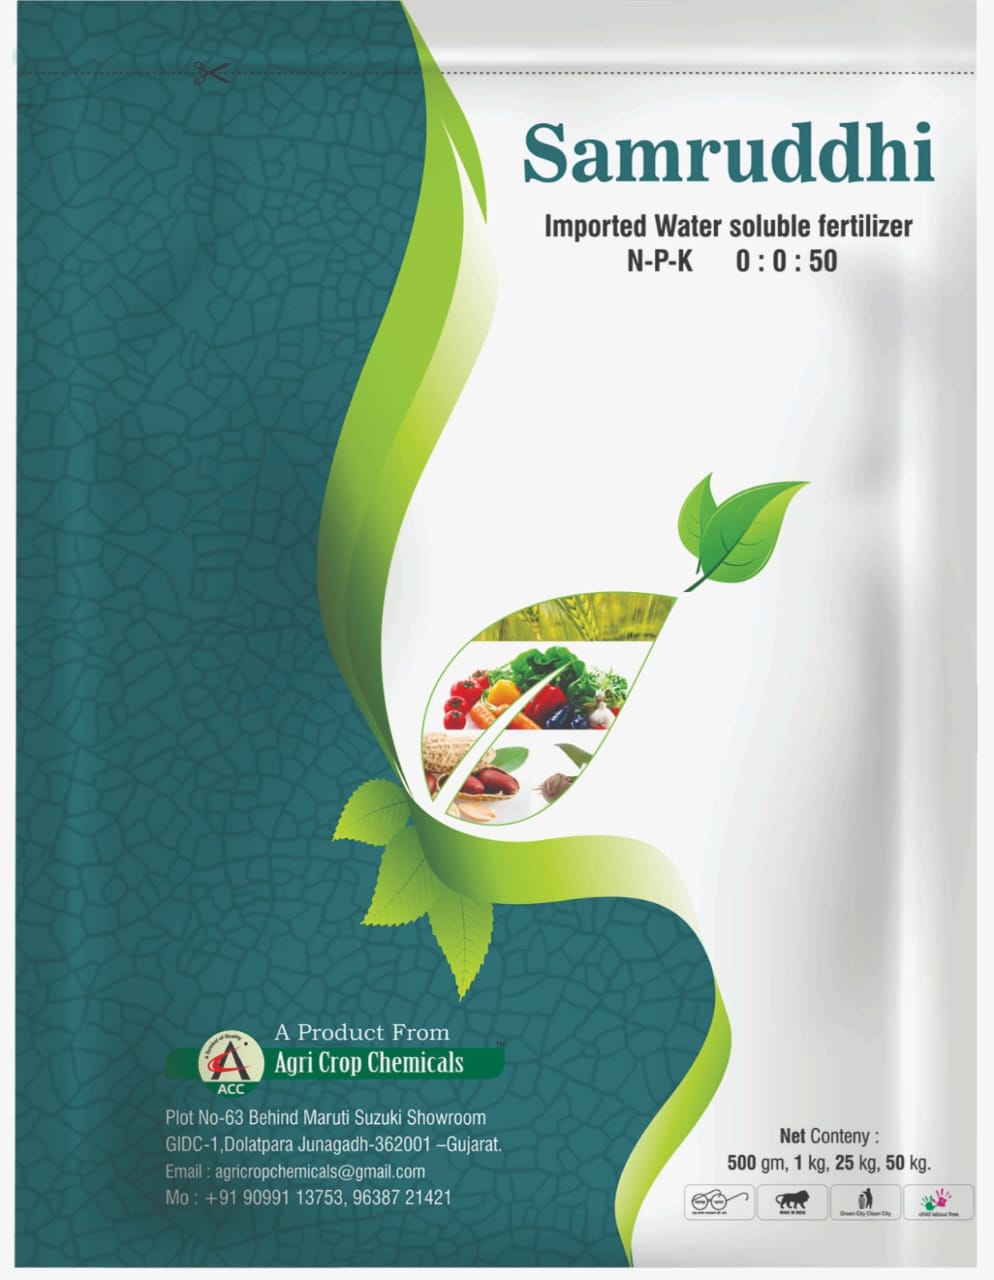 Water Soluble Fertilizer NPK 00:00:50 Samruddhi Weight - 1 Kg